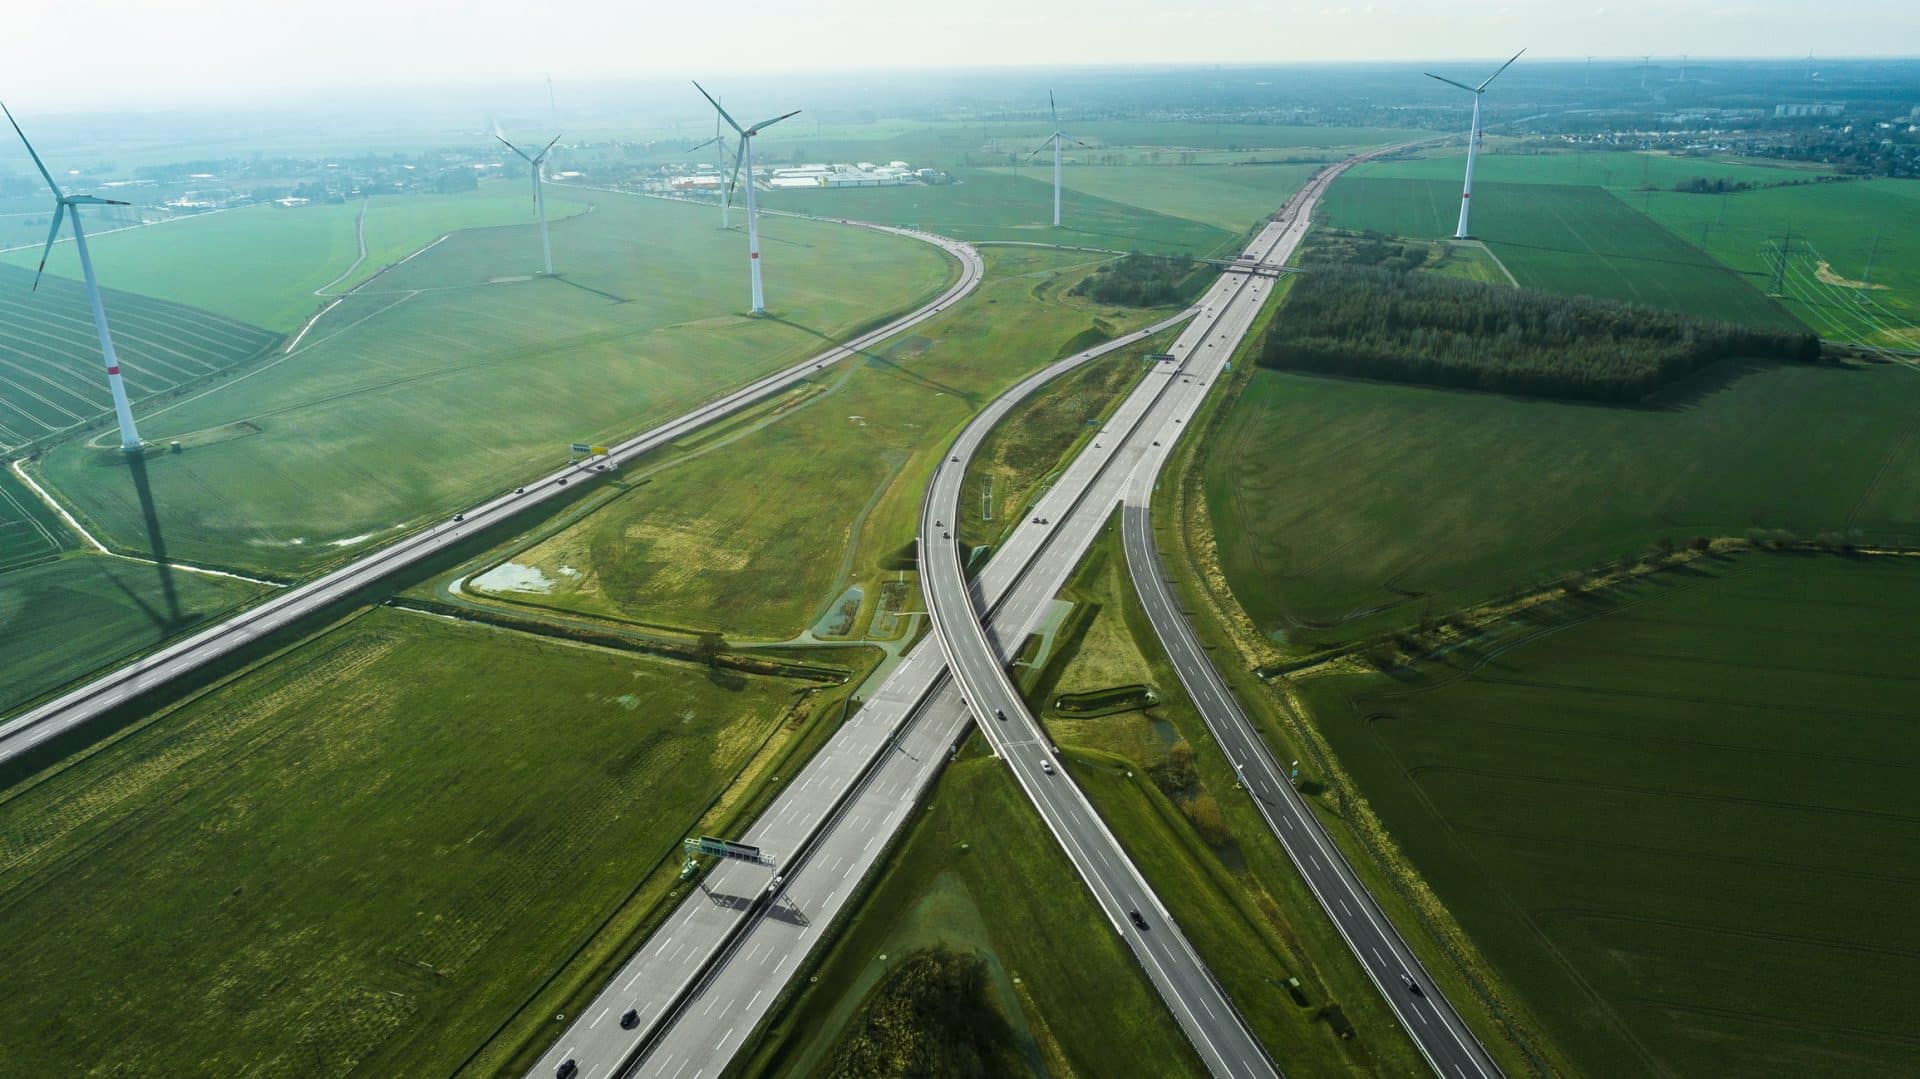 Aerial view of highways by wind turbines on field, Berlin, Brandenburg, Germany